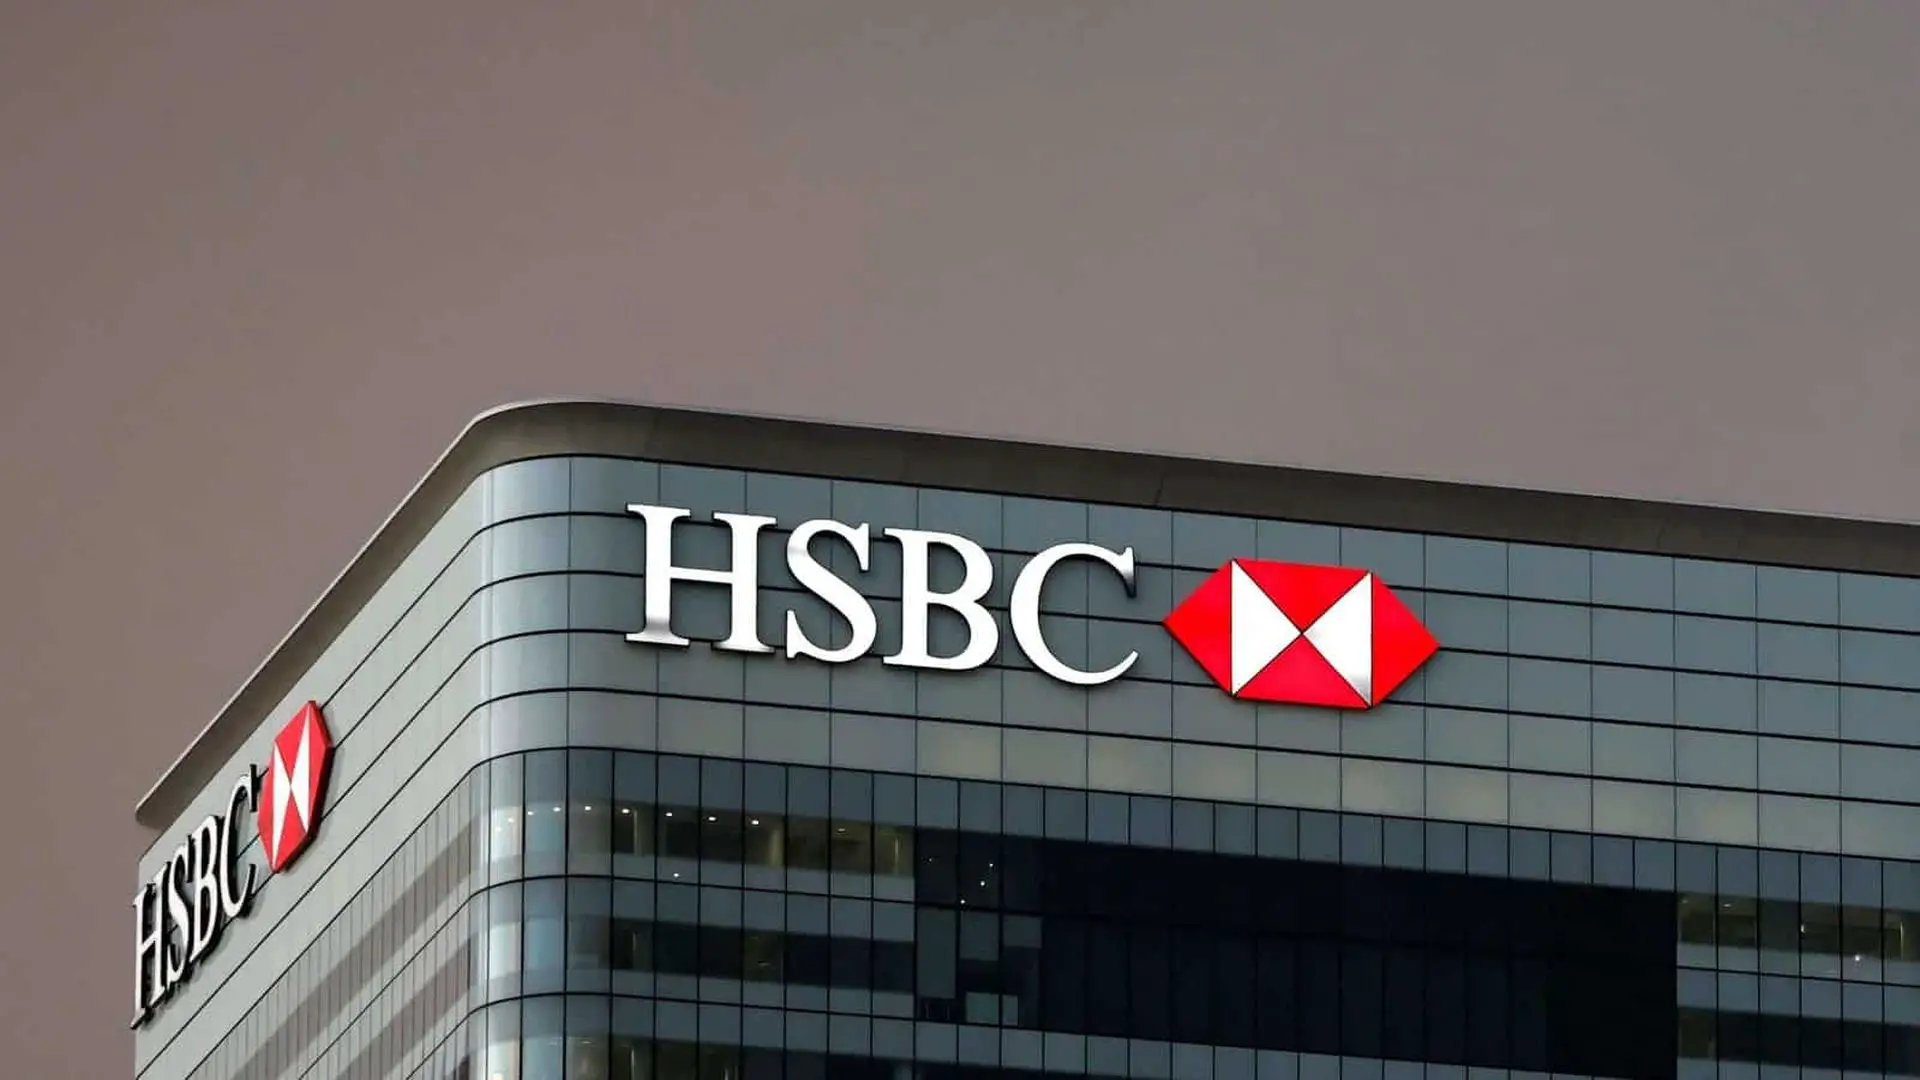 HSBC Uygun Faizli İhtiyaç Kredisi! Anında Onaylı 36 Ay Vadeyle 30.000 TL Kredi Fırsatı